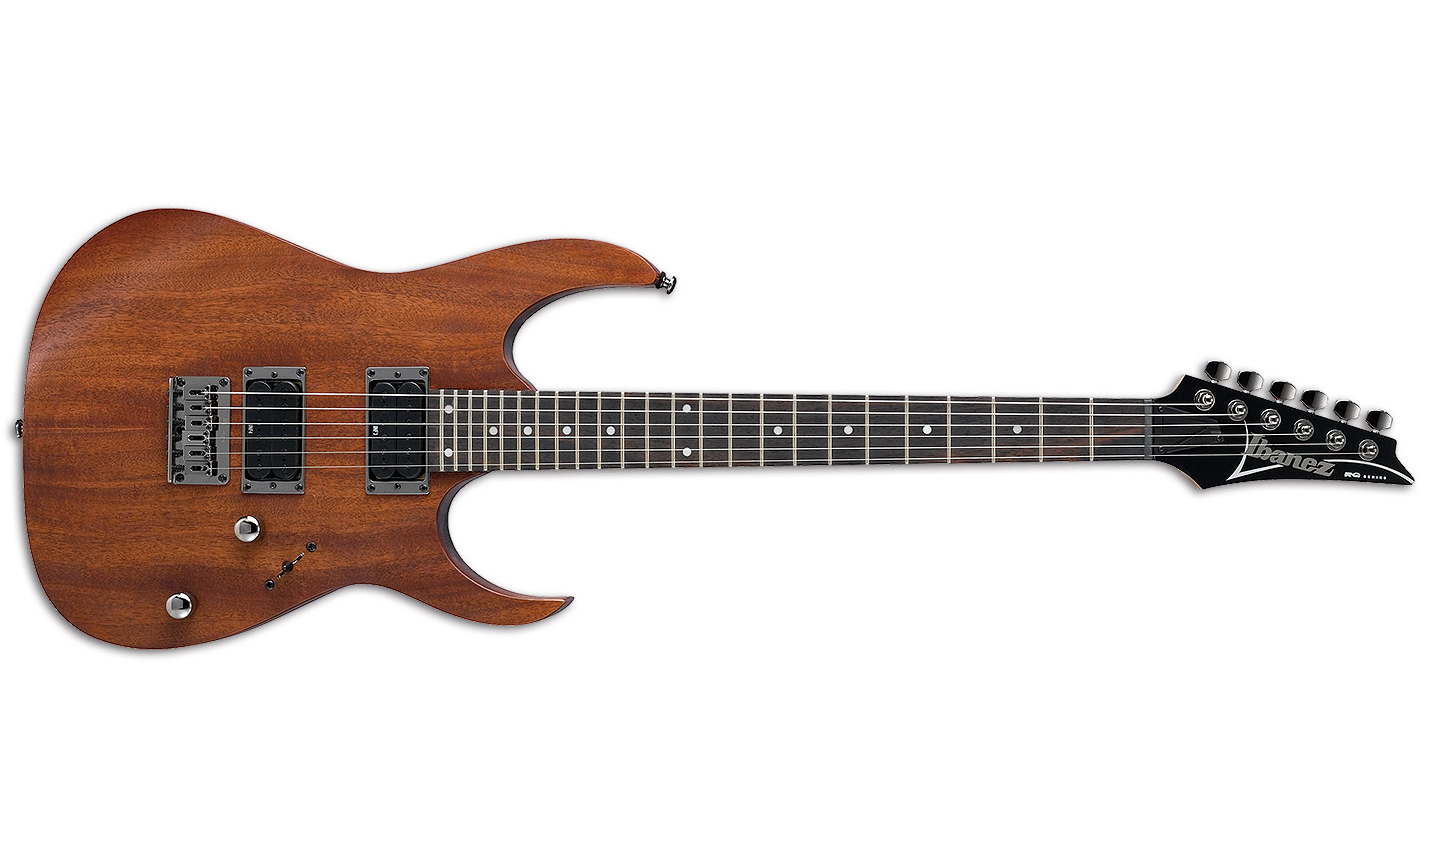 Ibanez Rg421 Mol Standard Hh Ht Jat - Natural Mahogany - Guitarra eléctrica con forma de str. - Variation 1